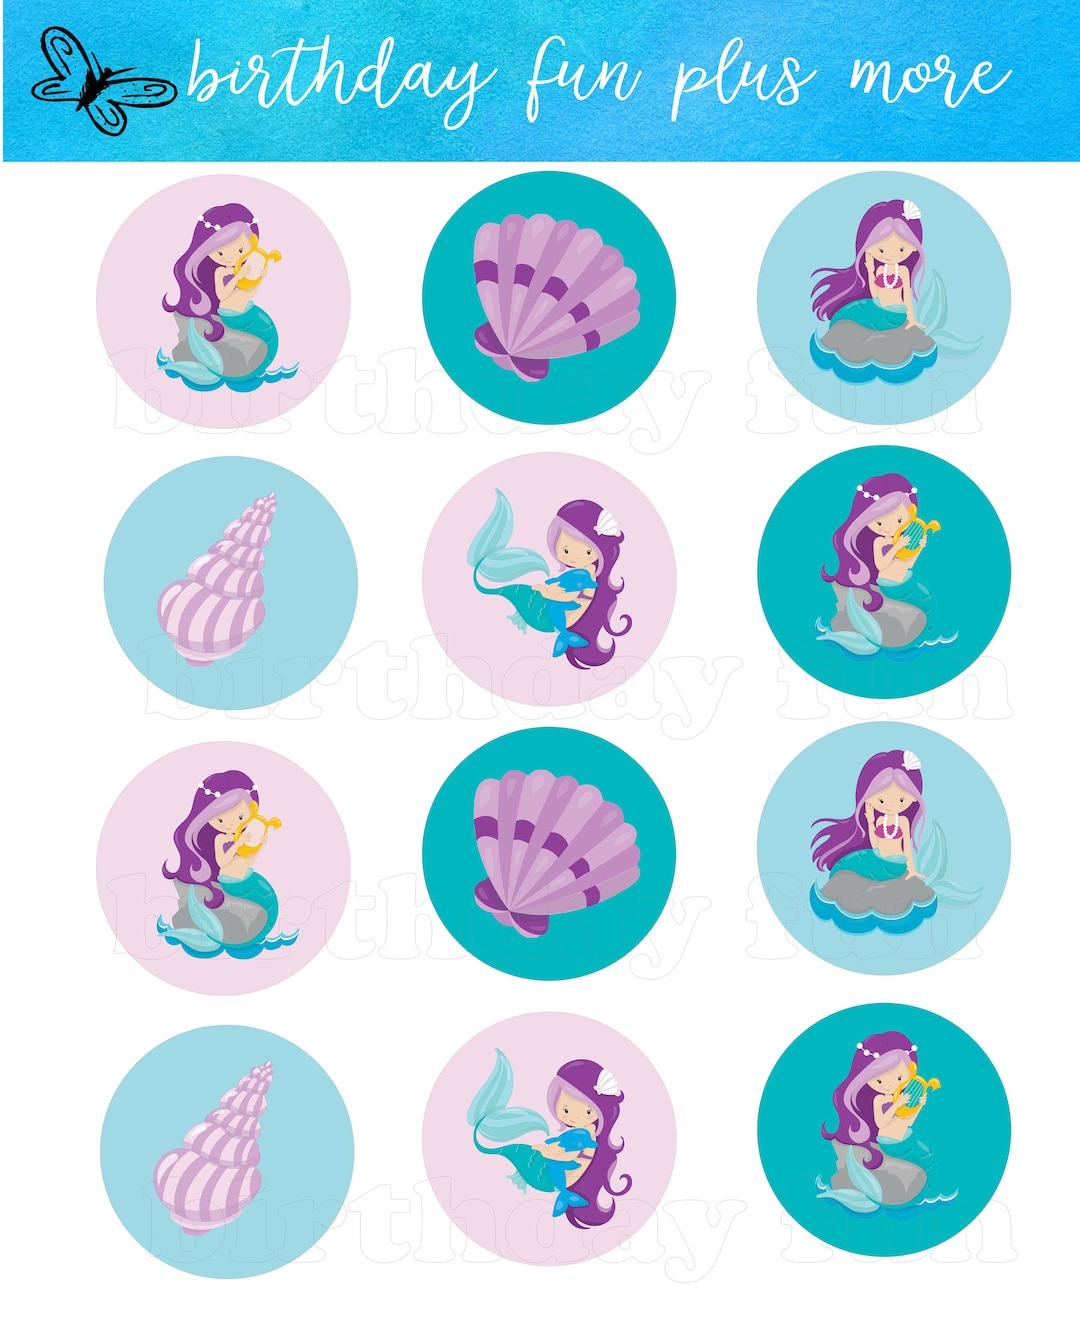 Printable Mermaid Cupcake Toppers, Digital Mermaid Rounds, Instant Download Printable Mermaid, Mermaid Birthday Party, Mermaid Decorations - Etsy within Free Printable Mermaid Cupcake Toppers